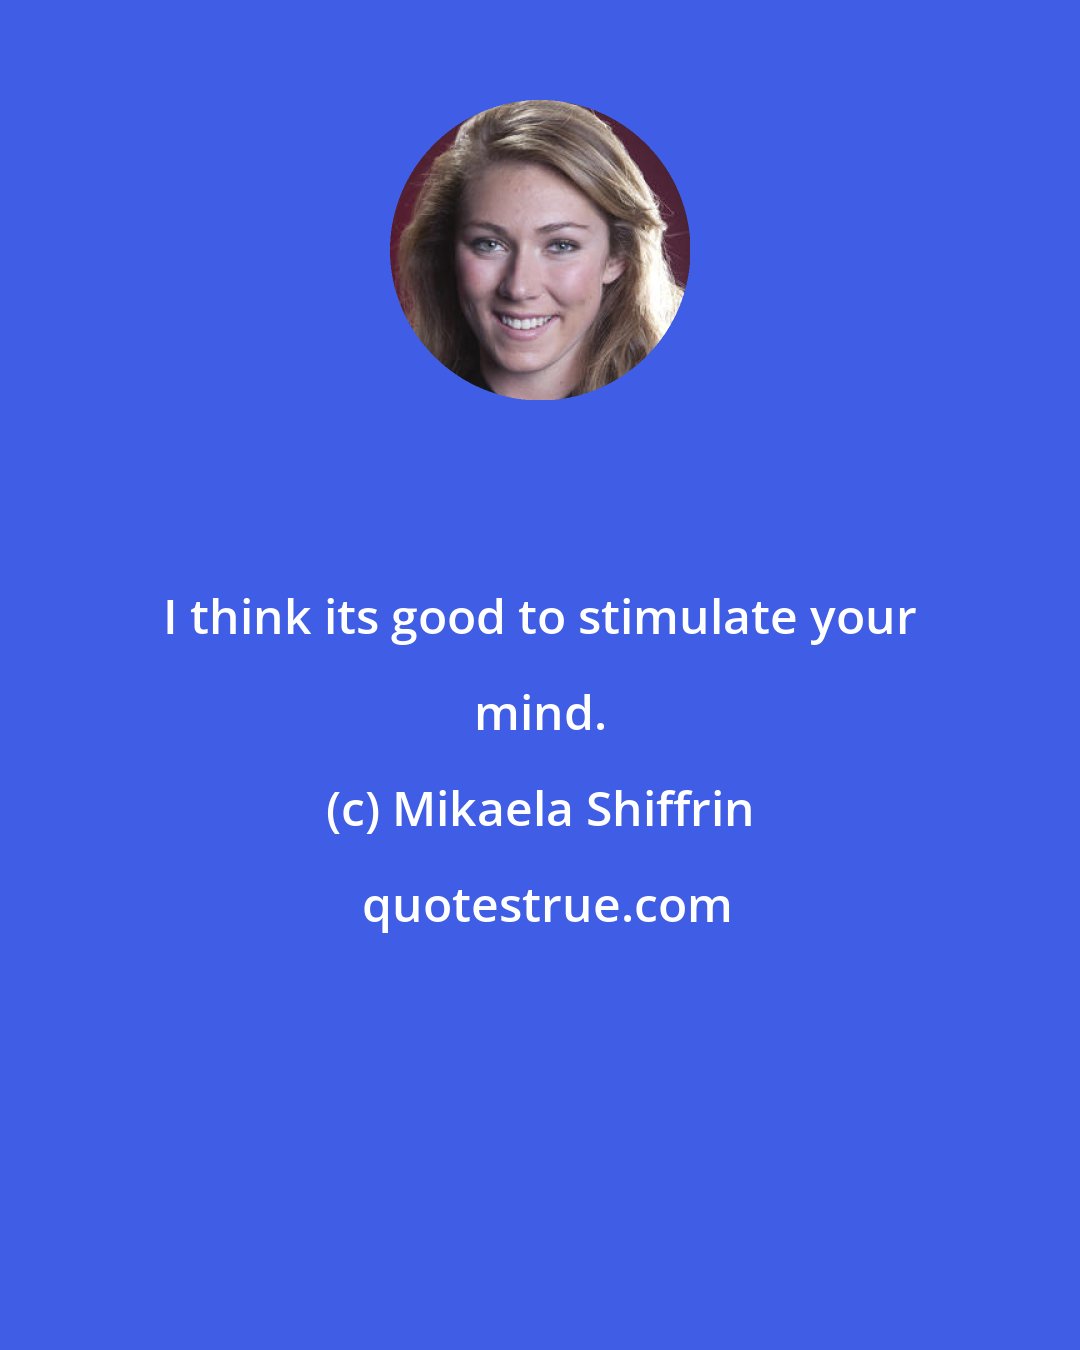 Mikaela Shiffrin: I think its good to stimulate your mind.